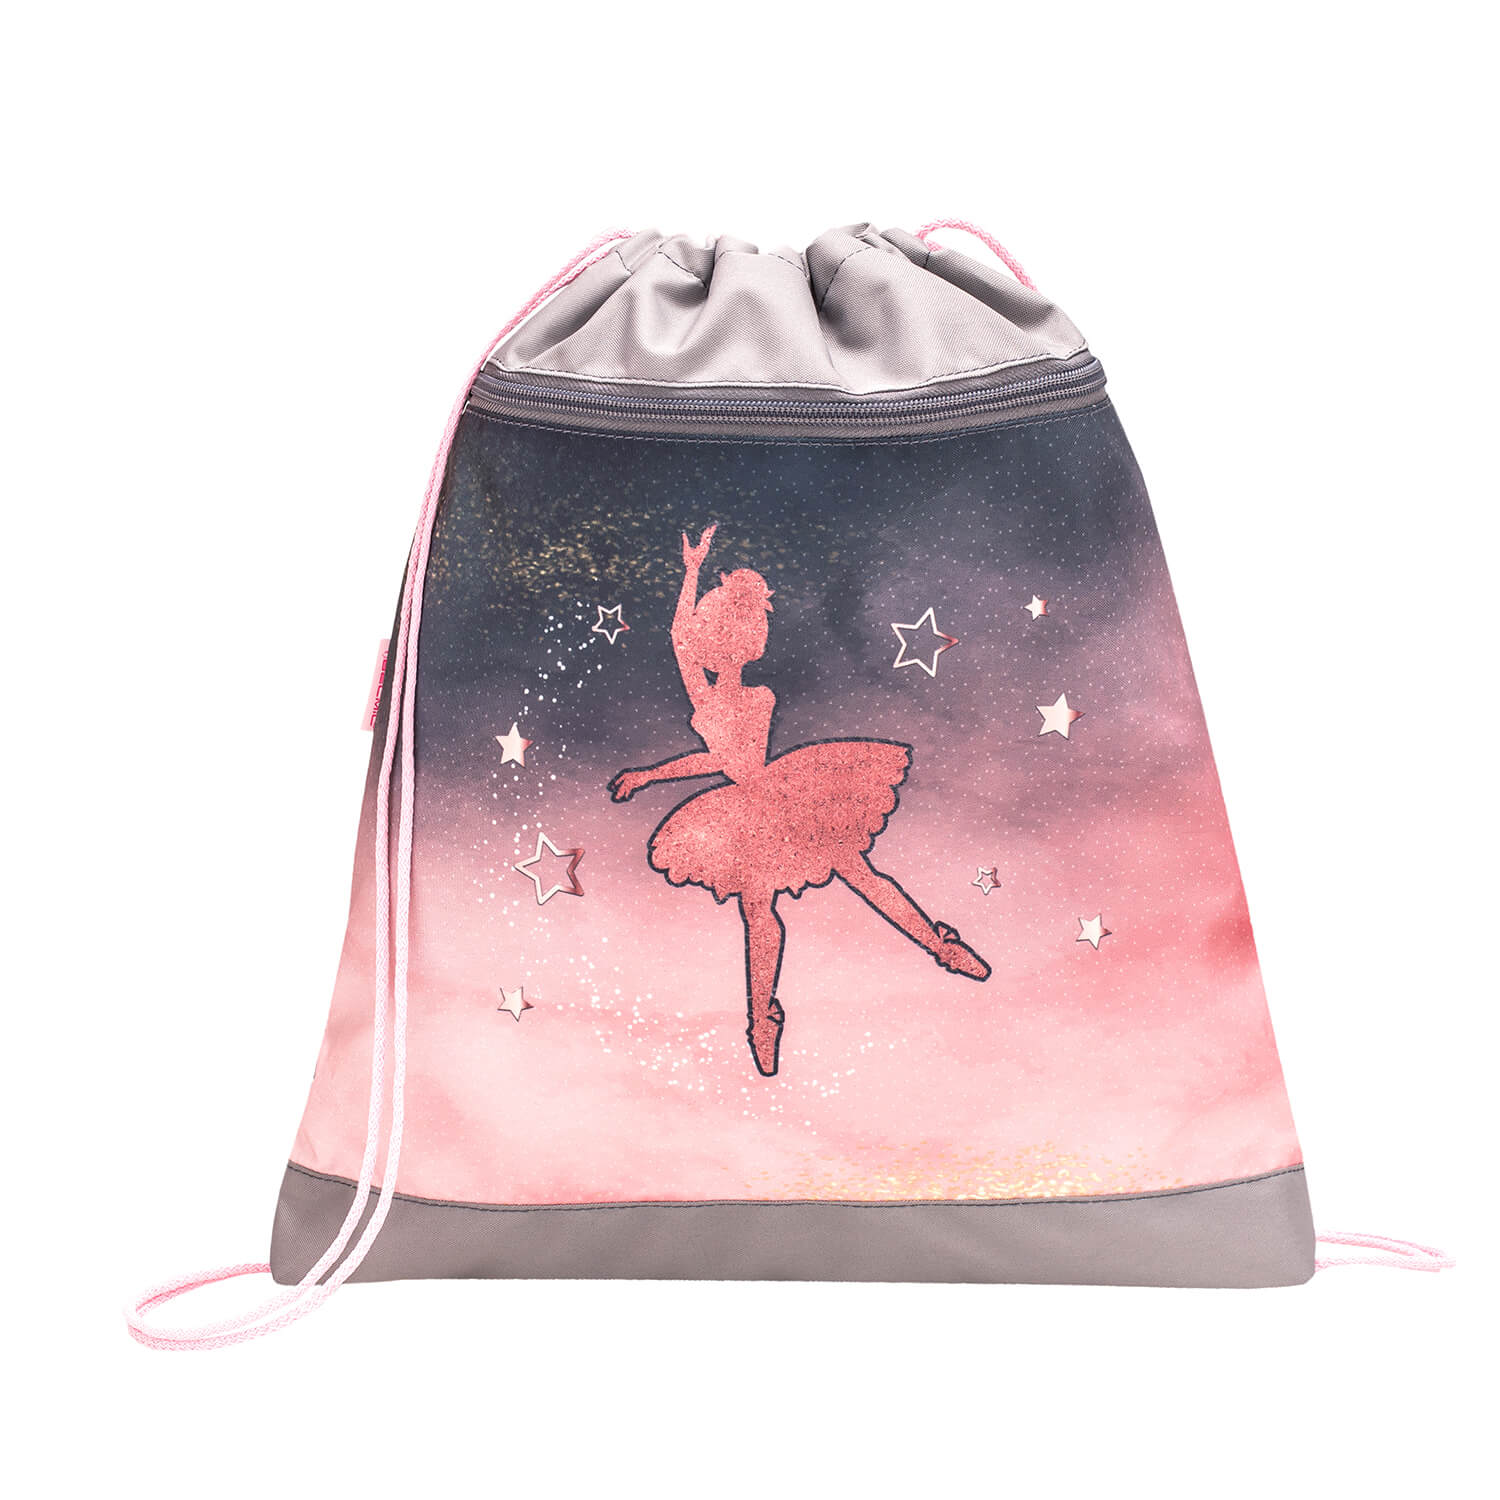 Compact Ballerina Black Pink schoolbag set 4 pcs